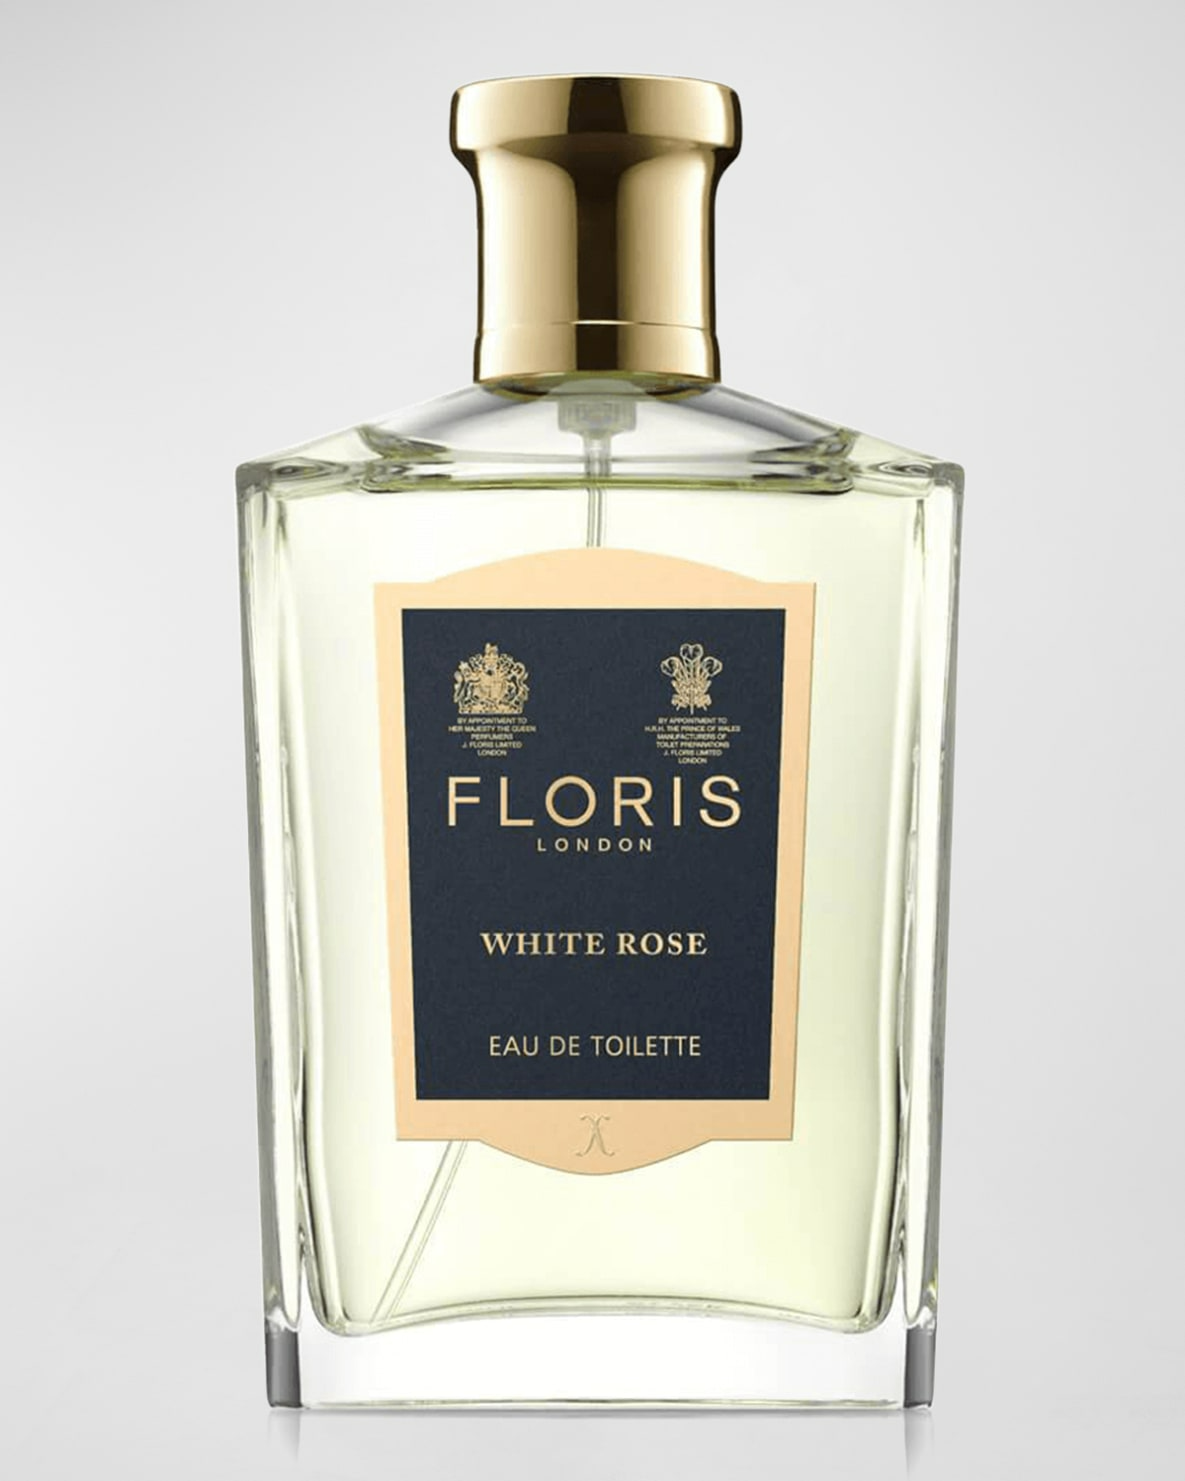 Floris London White Rose Eau de Toilette - 3.4 Oz-0